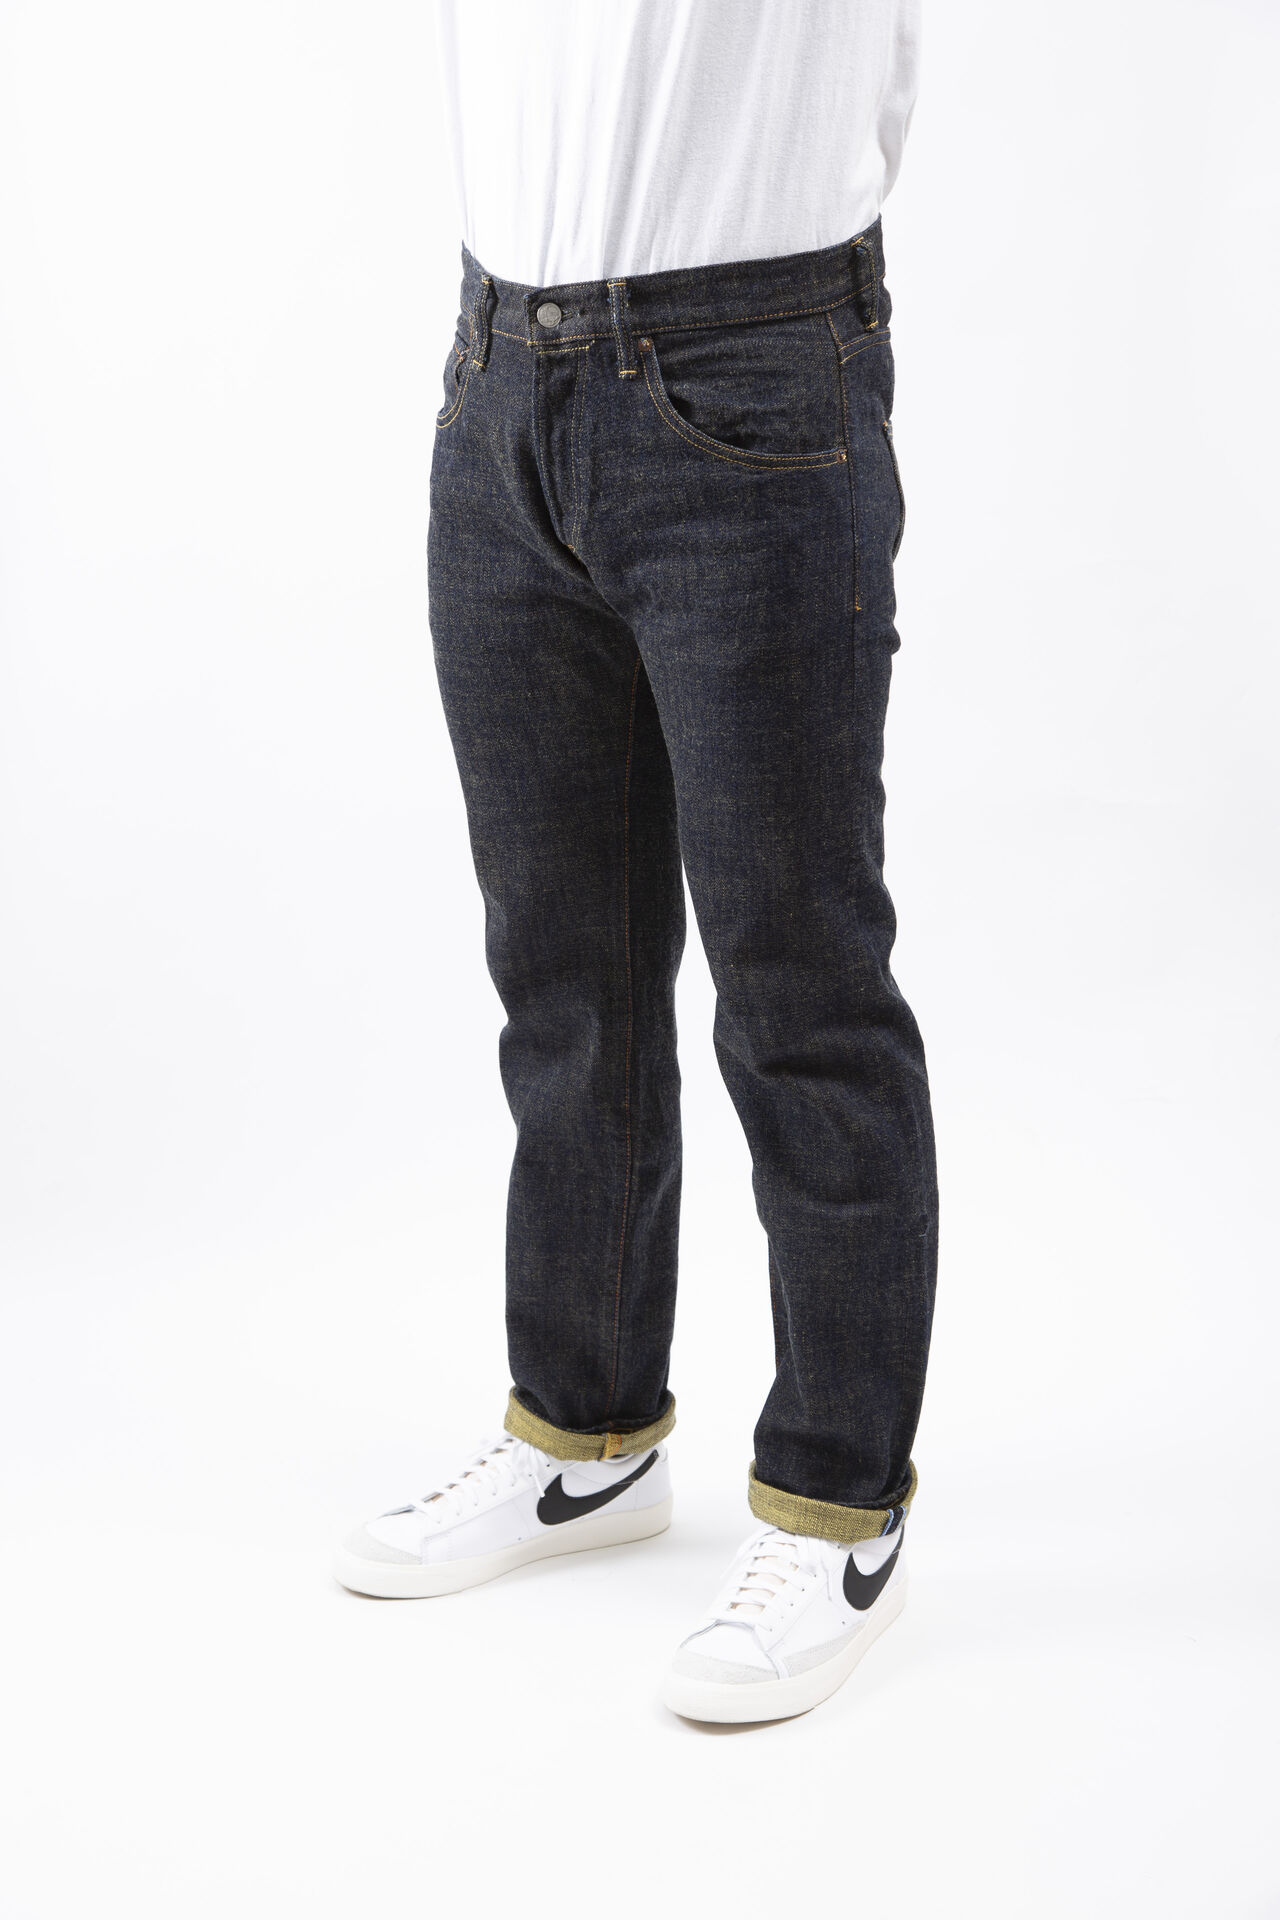 Slim Straight SOGA 15oz Jeans,, large image number 1